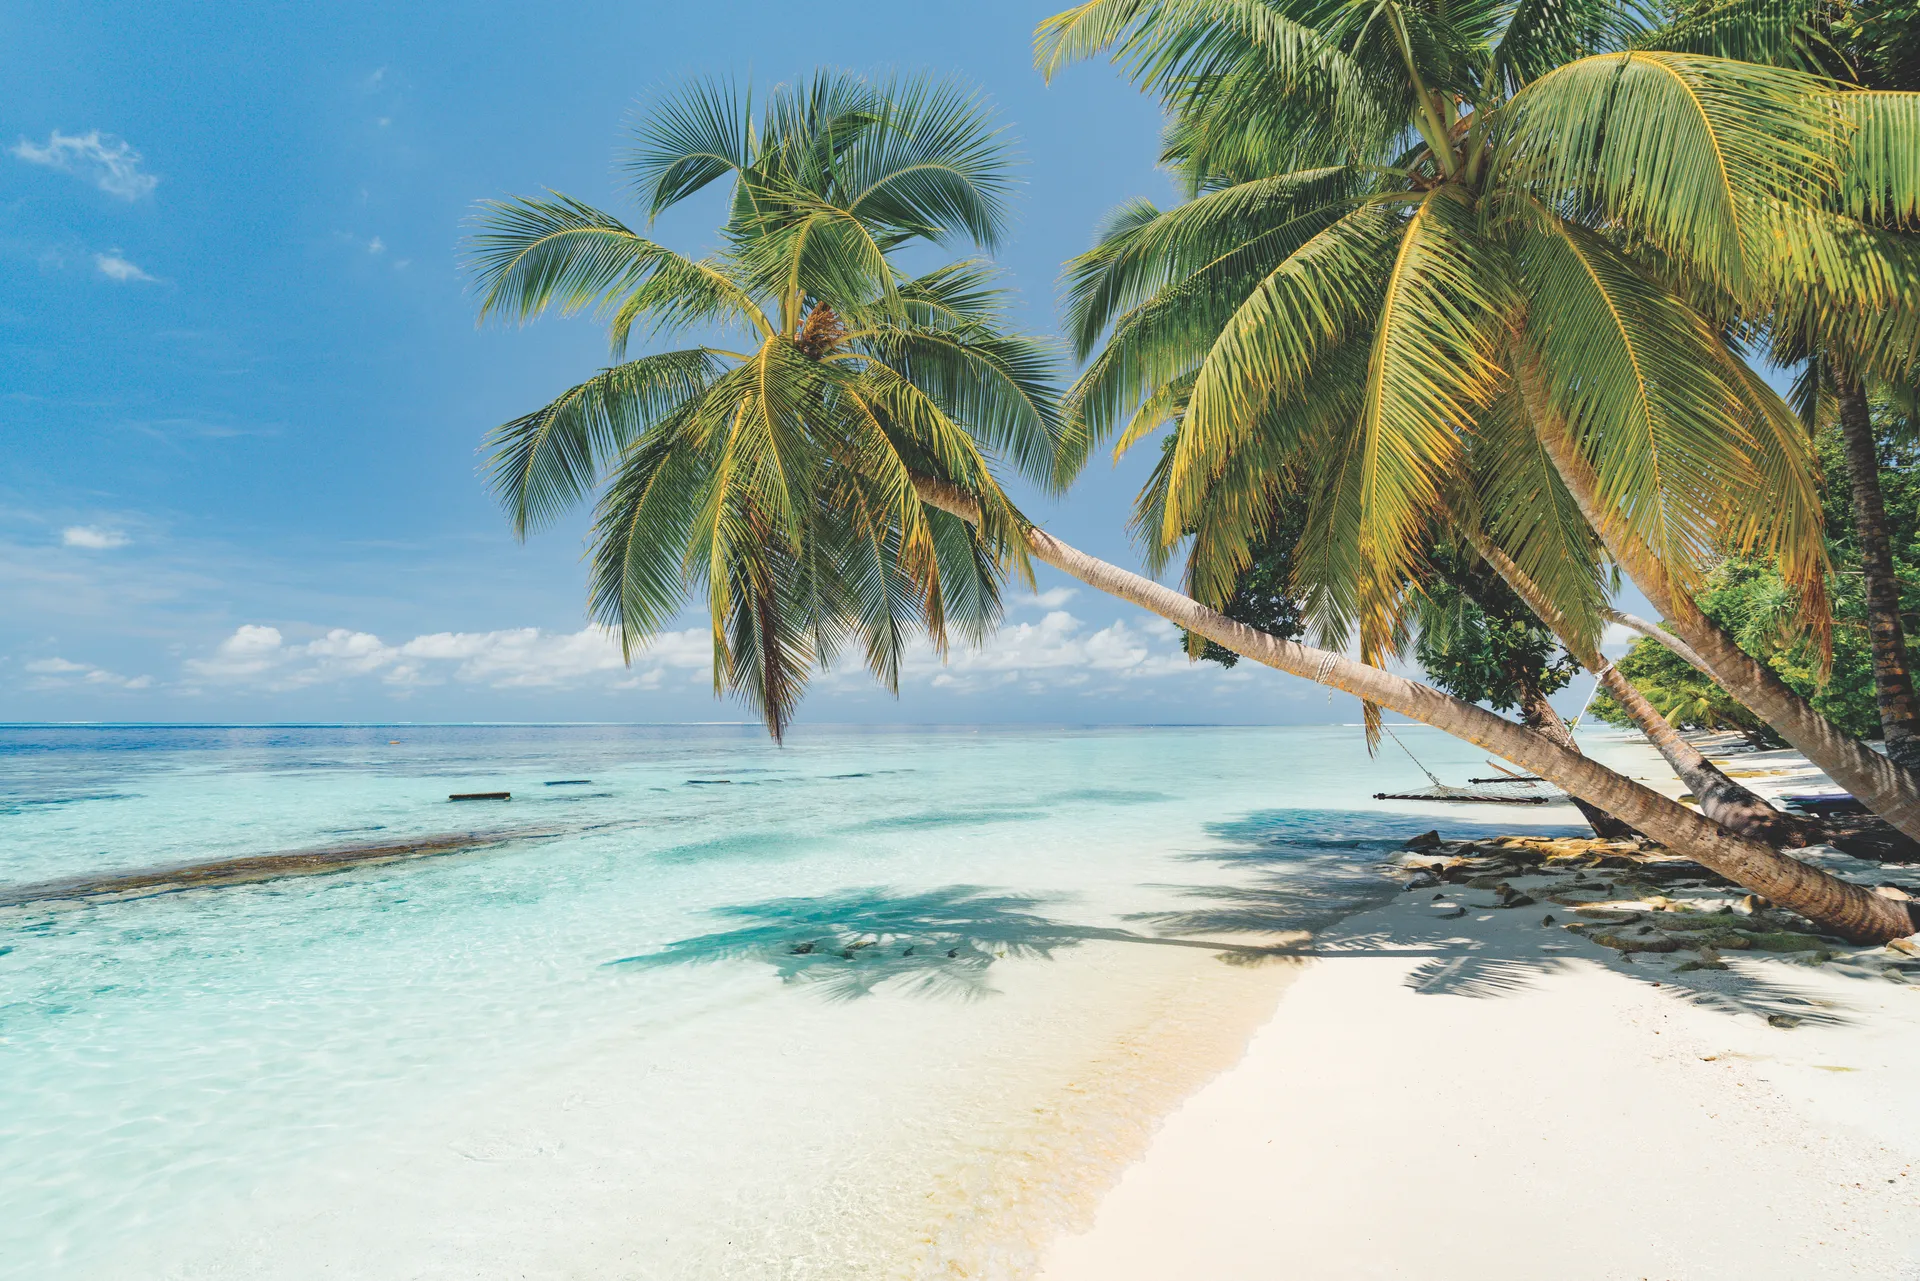 Vous partez en vacances aux Maldives ? Réservez votre hôtel aux Maldives avec Neckermann. Prix serrés, meilleure qualité.